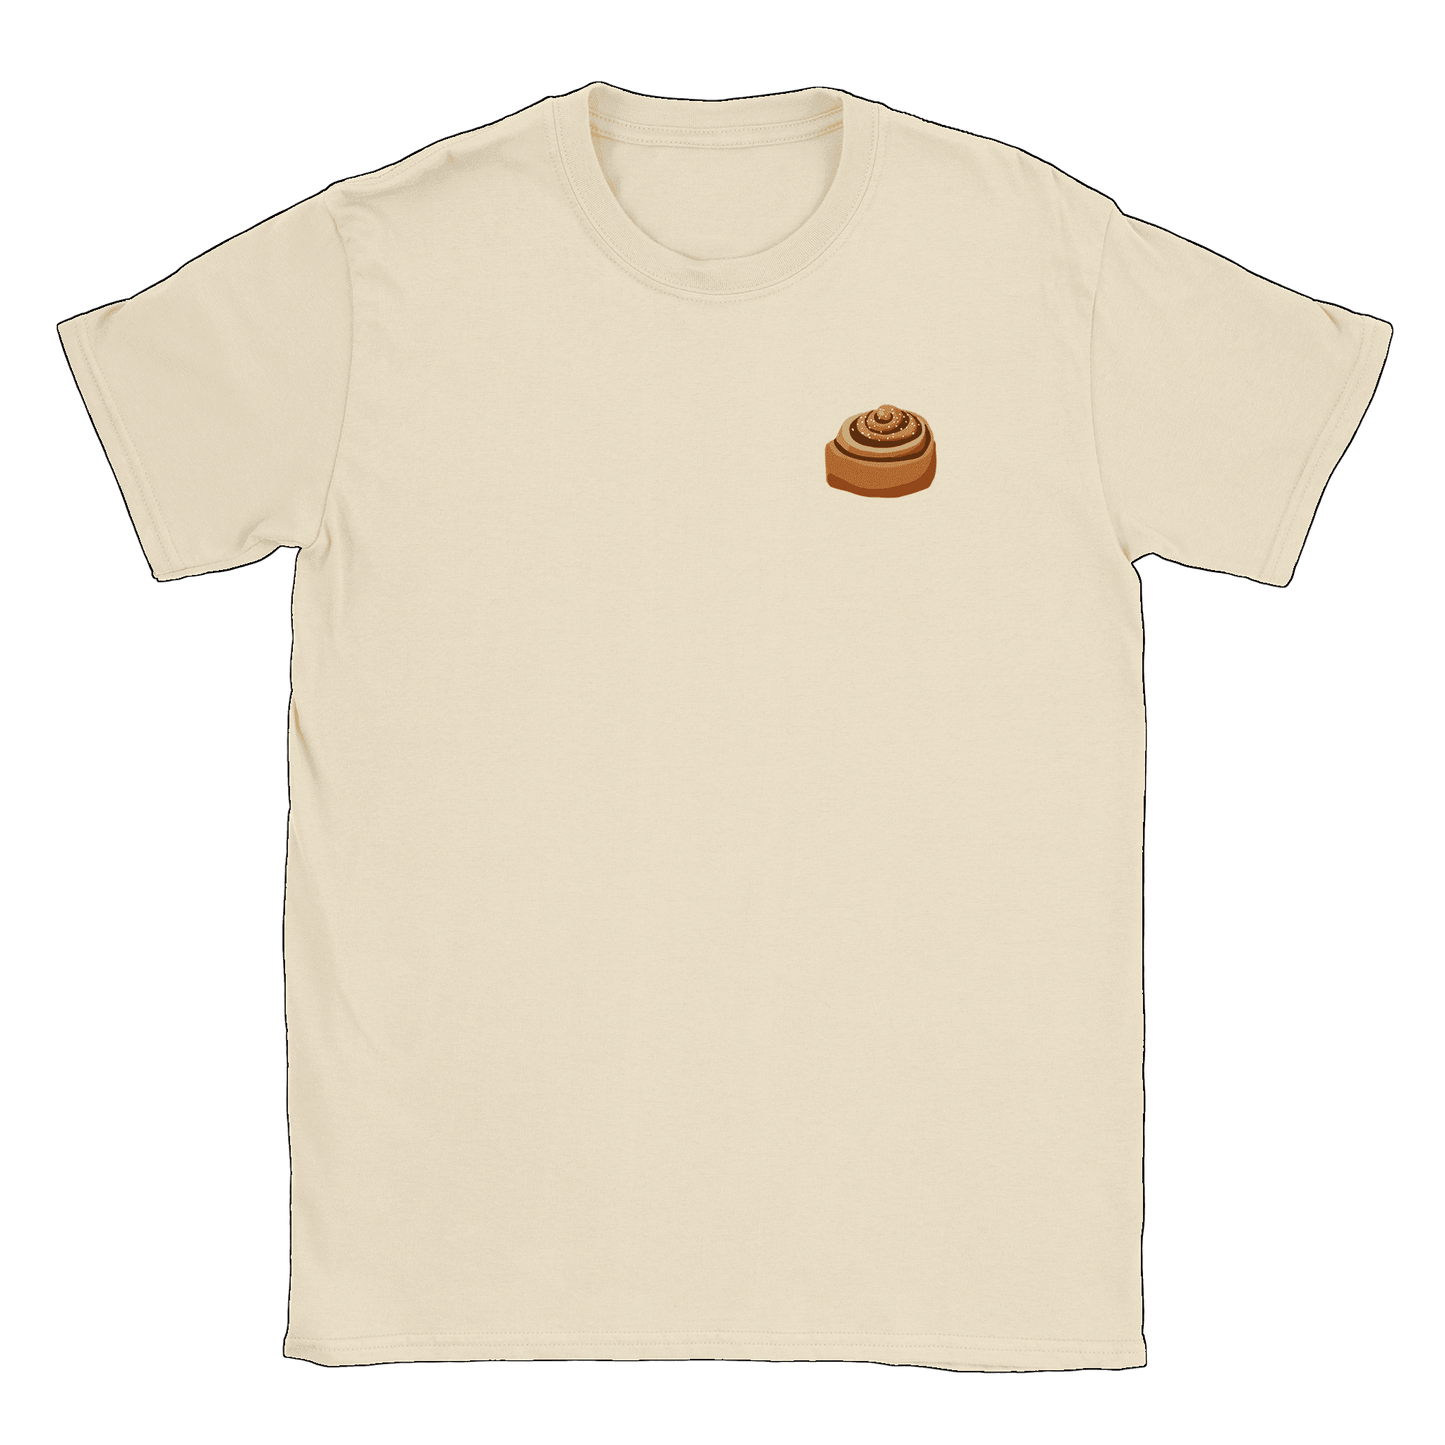 Kanelbulle Liten - T-shirt Natural